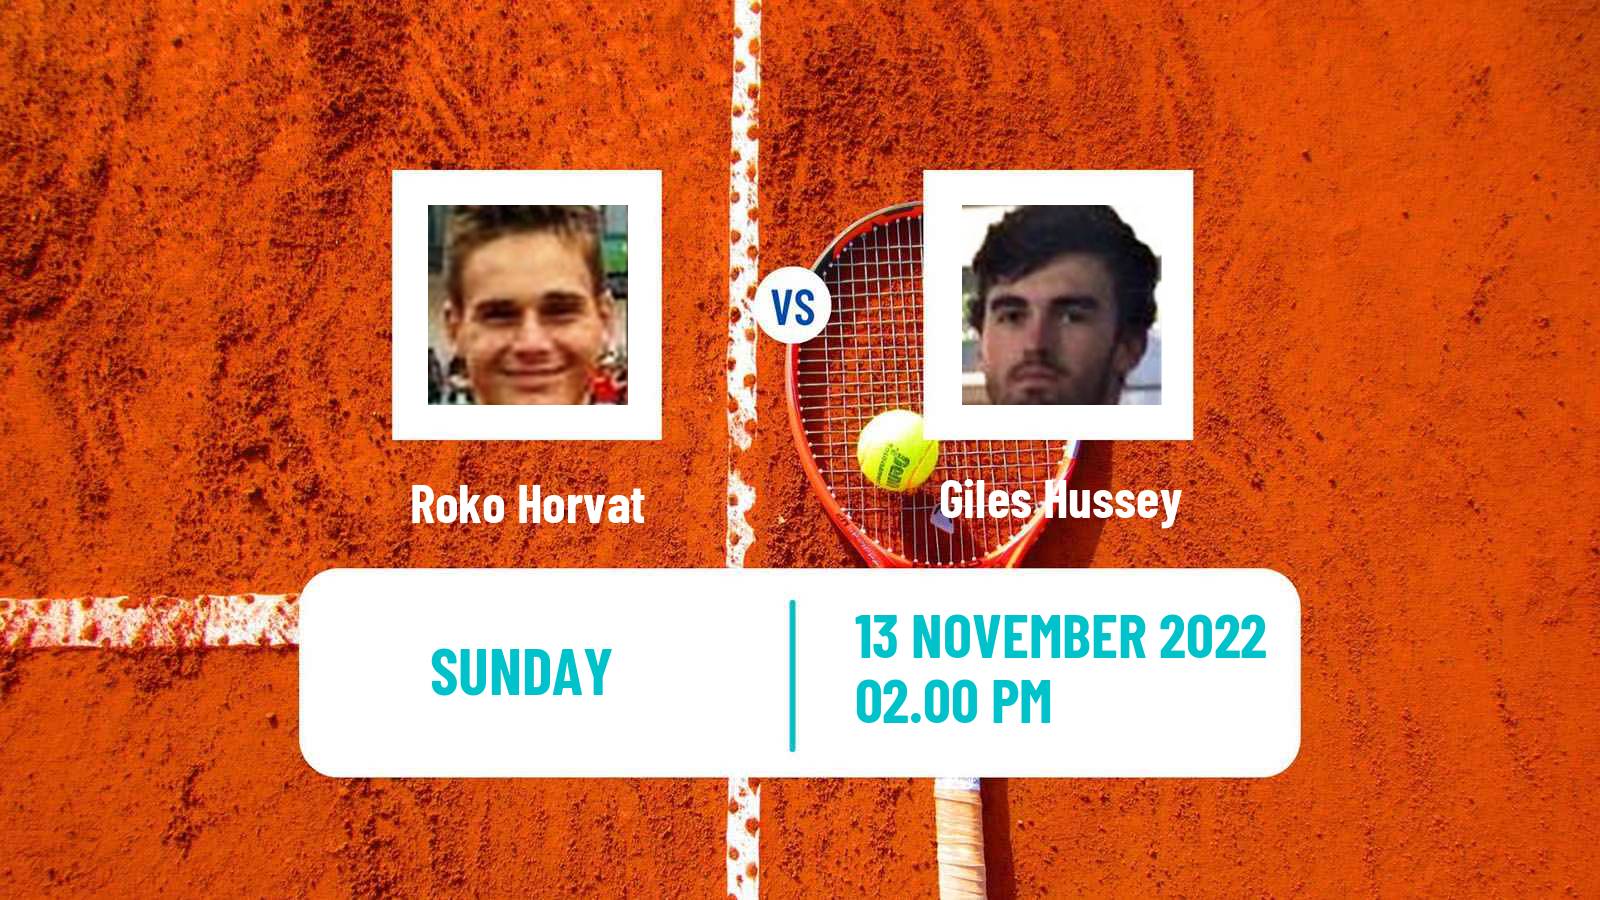 Tennis ATP Challenger Roko Horvat - Giles Hussey